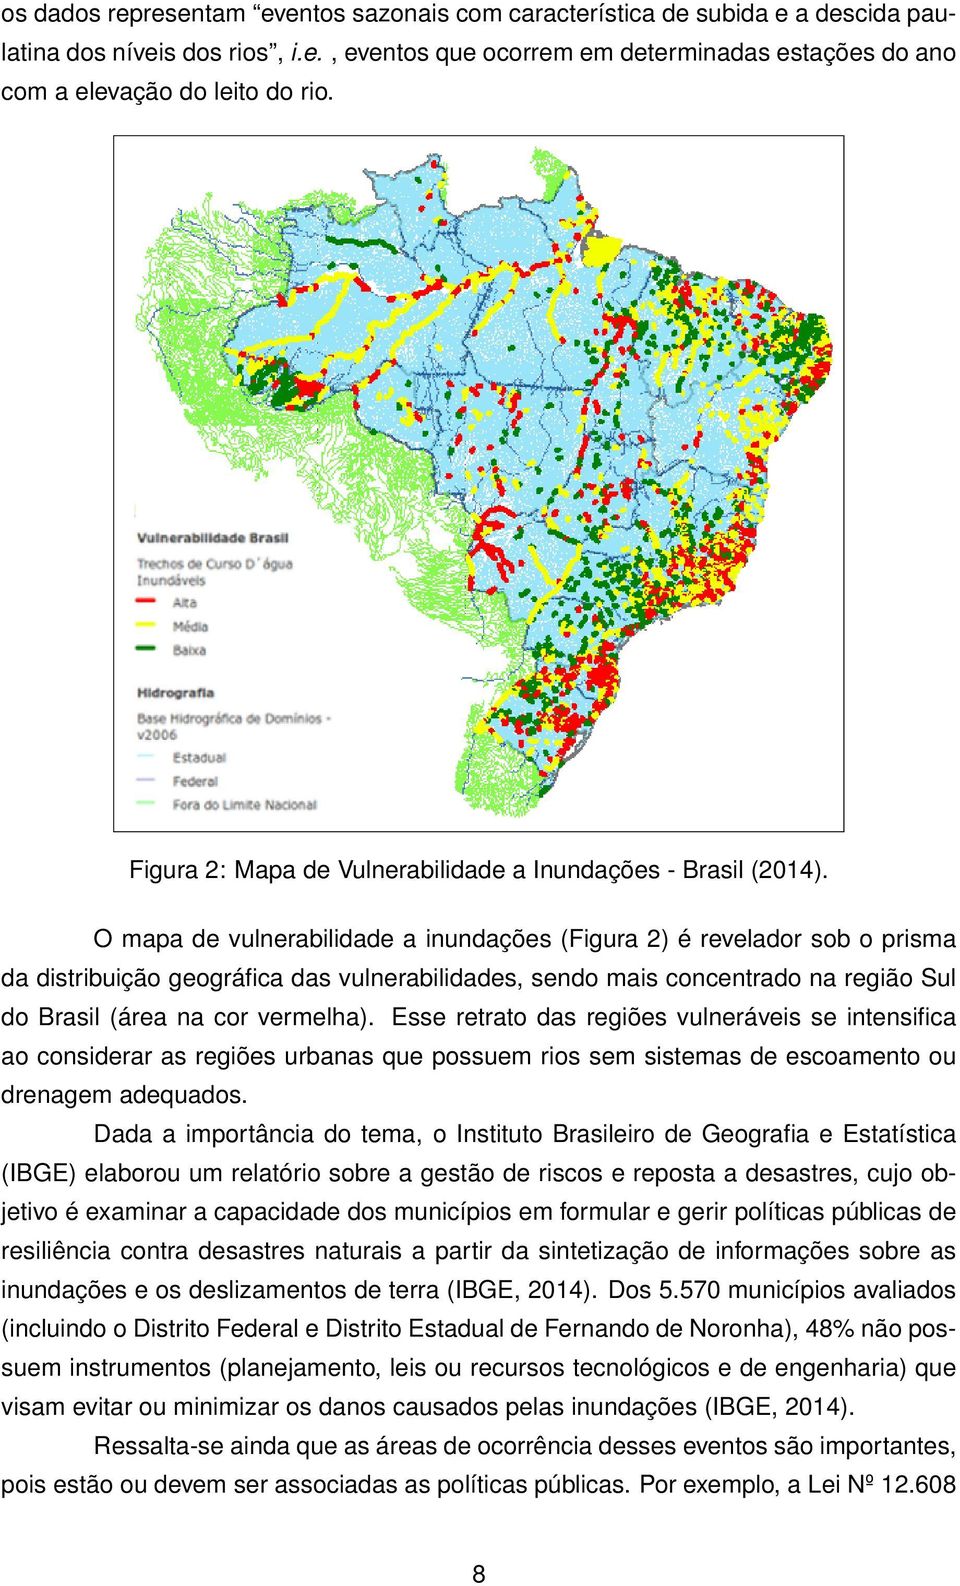 O mapa de vulnerabilidade a inundações (Figura 2) é revelador sob o prisma da distribuição geográfica das vulnerabilidades, sendo mais concentrado na região Sul do Brasil (área na cor vermelha).